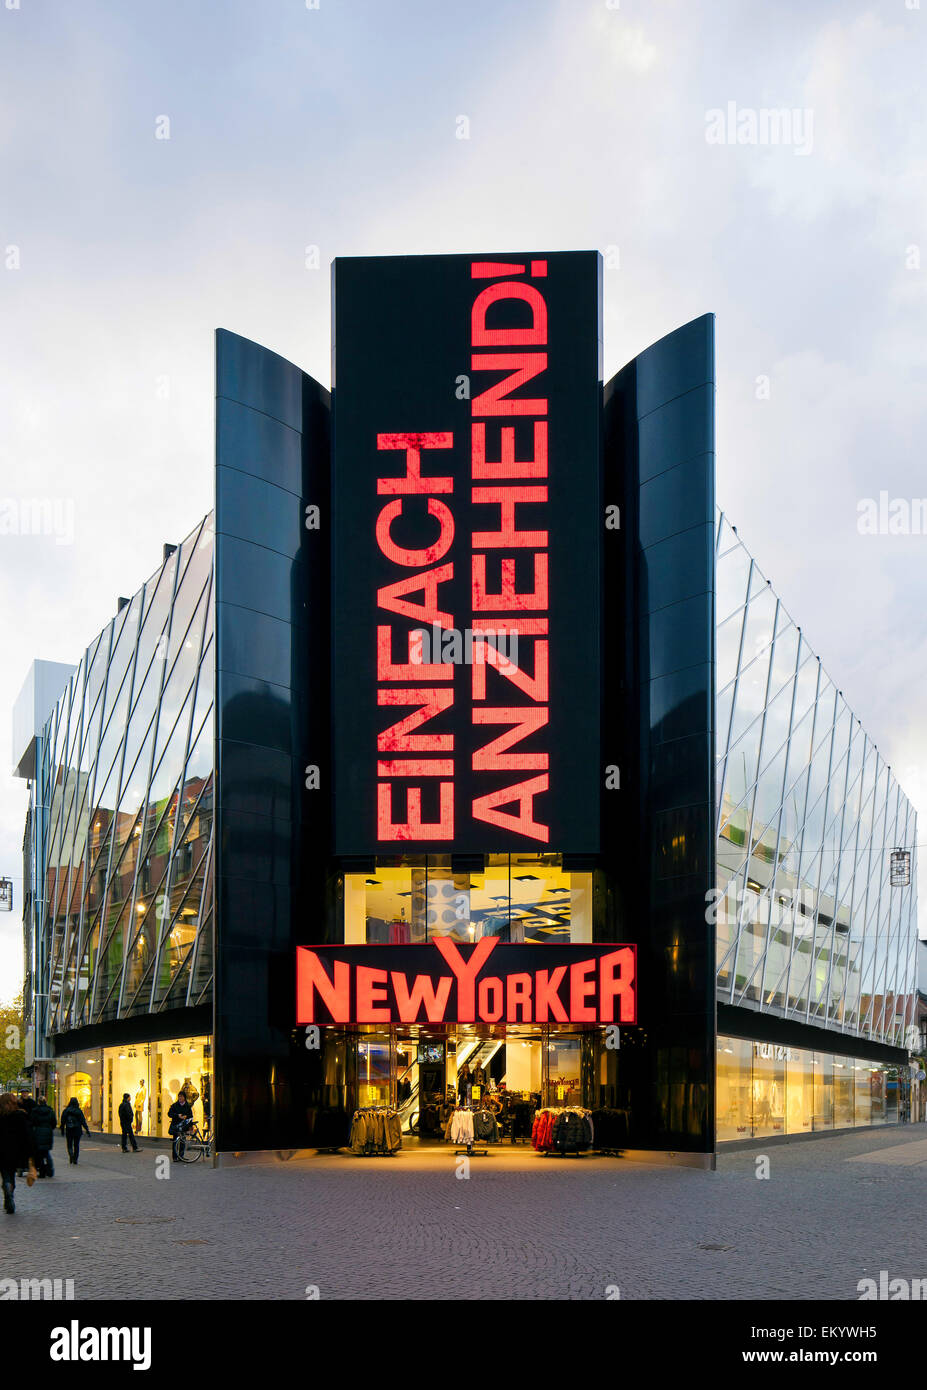 Immeuble commercial, New Yorker, avec façade numérique, Braunschweig, Basse-Saxe, Allemagne Banque D'Images